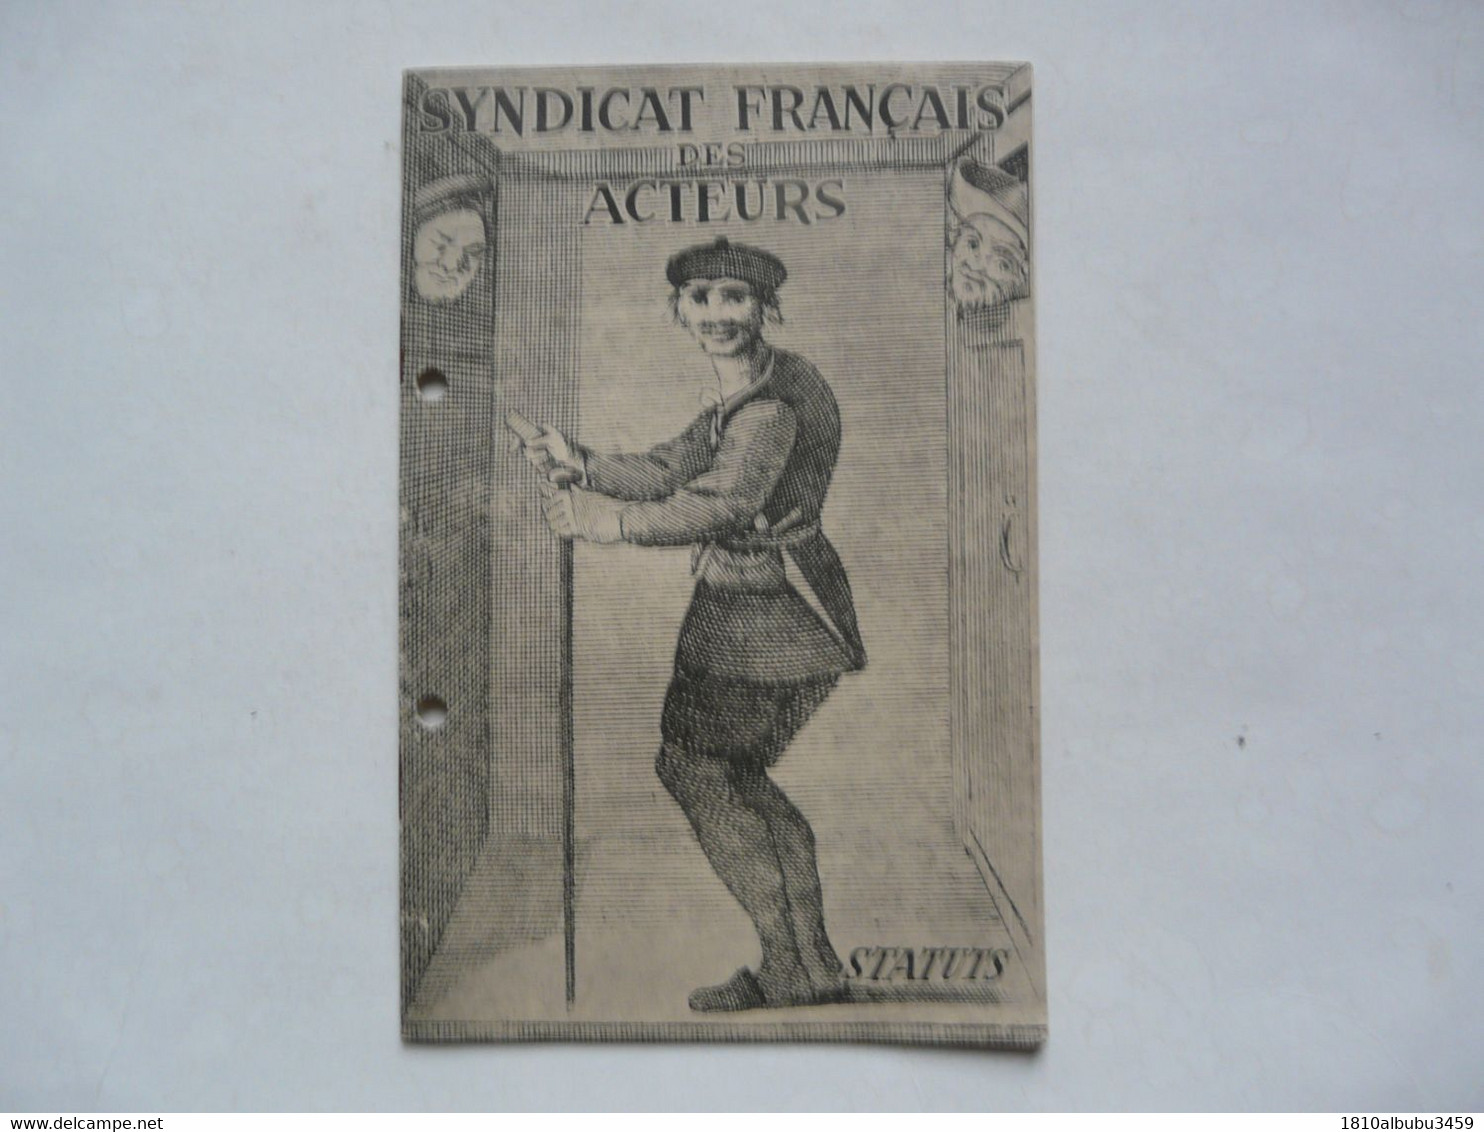 FASCICULE - SYNDICAT FRANCAIS DES ACTEURS : Statuts - Audio-Visual